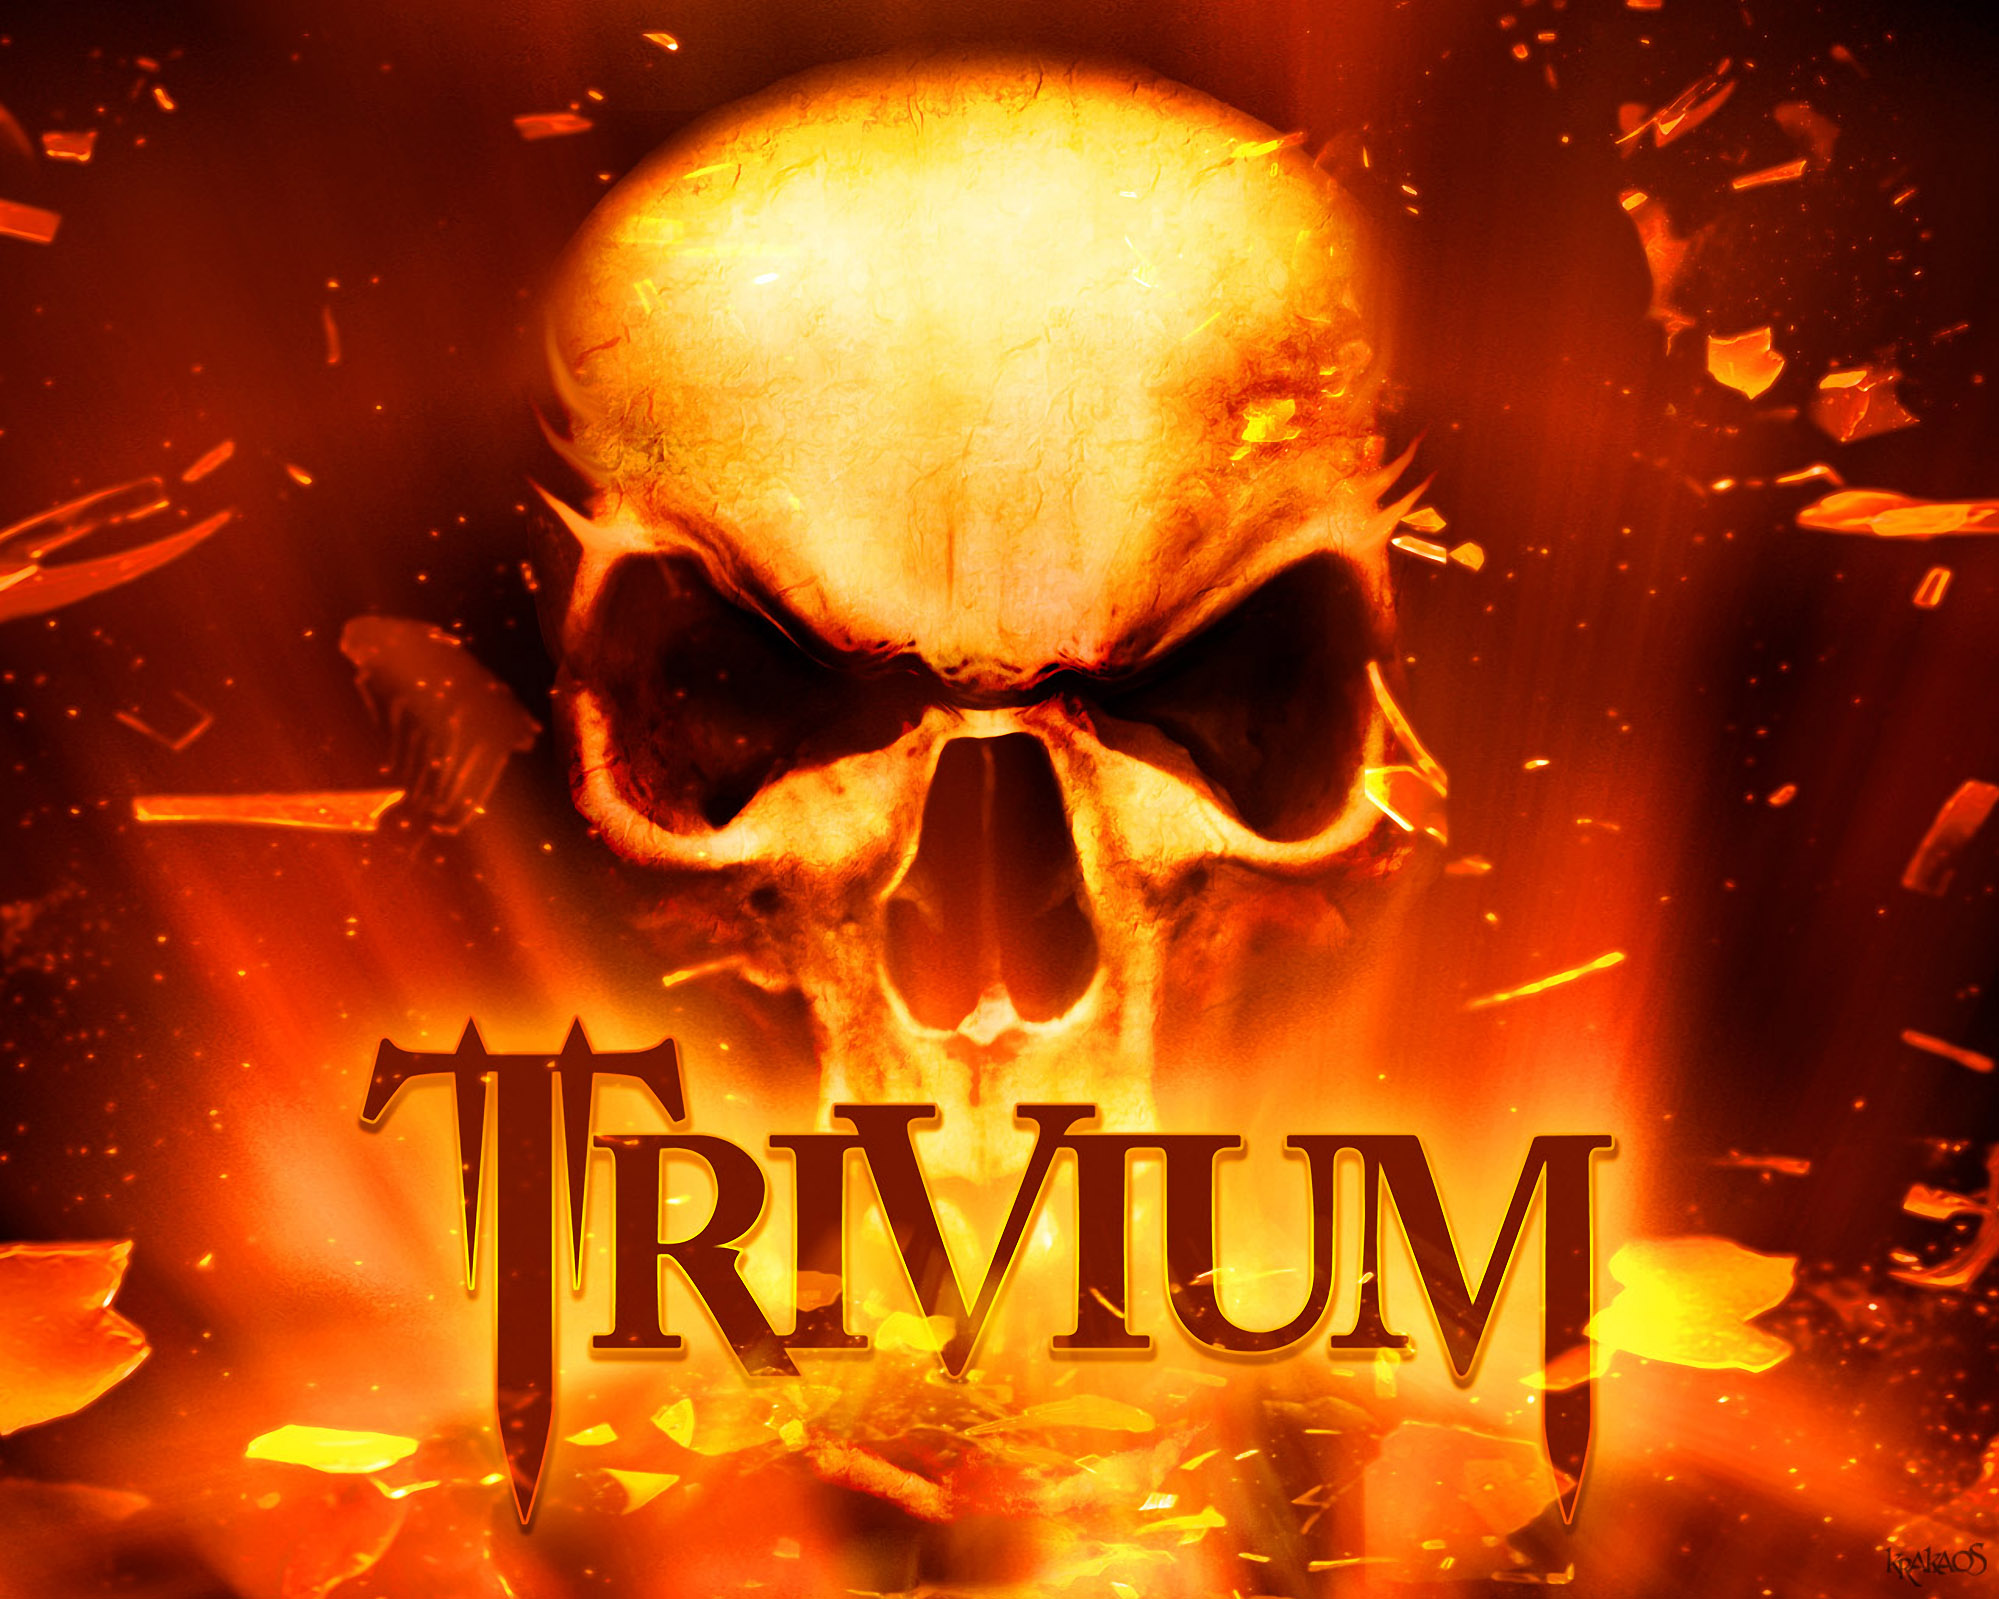 Secret Symbol Trivium Burning City Skulls Pentagram